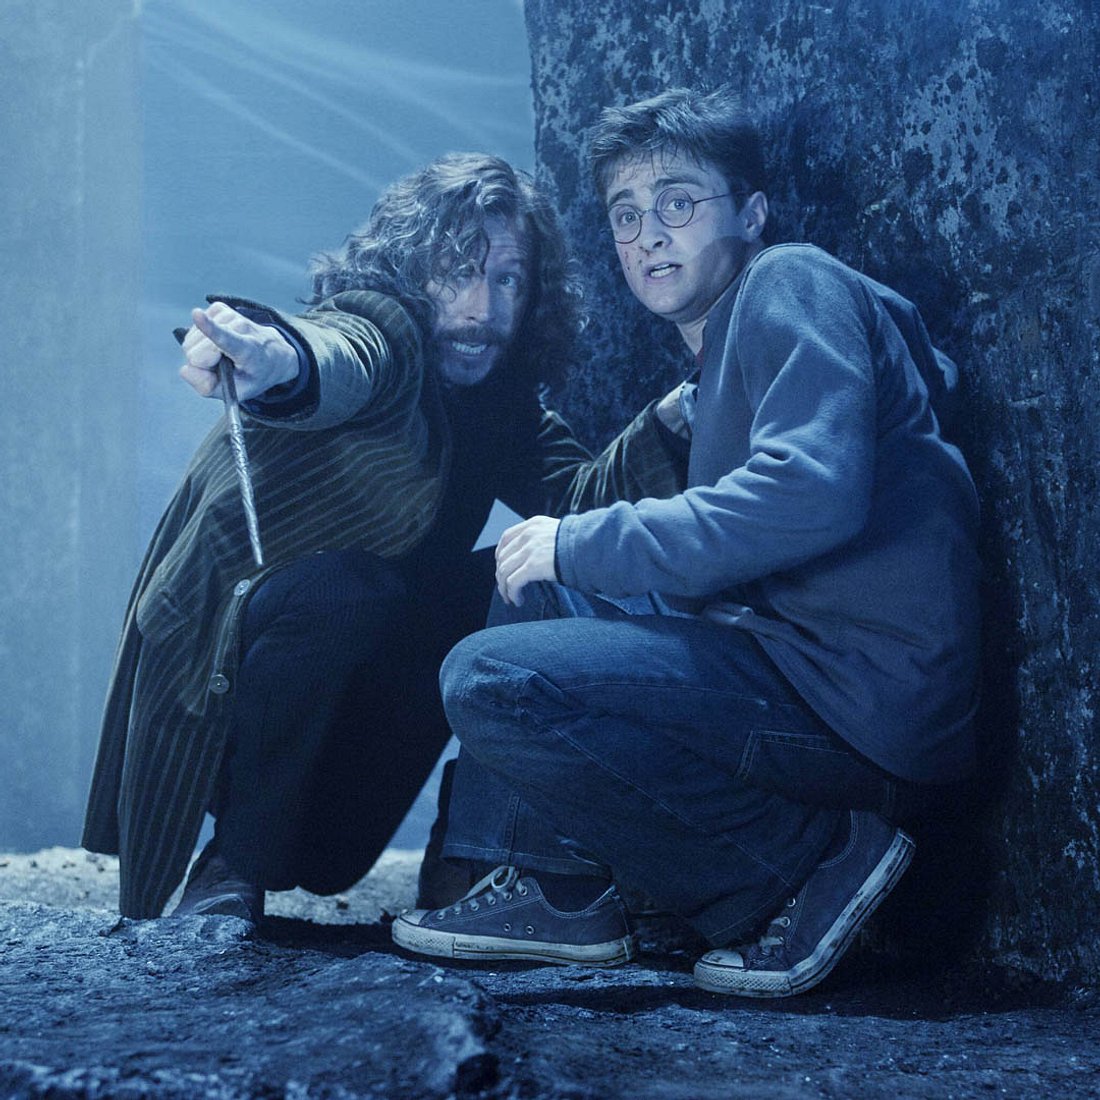 Harry Potter verstorbene Figuren: Das bedeuten die letzten Worte von Sirius Black